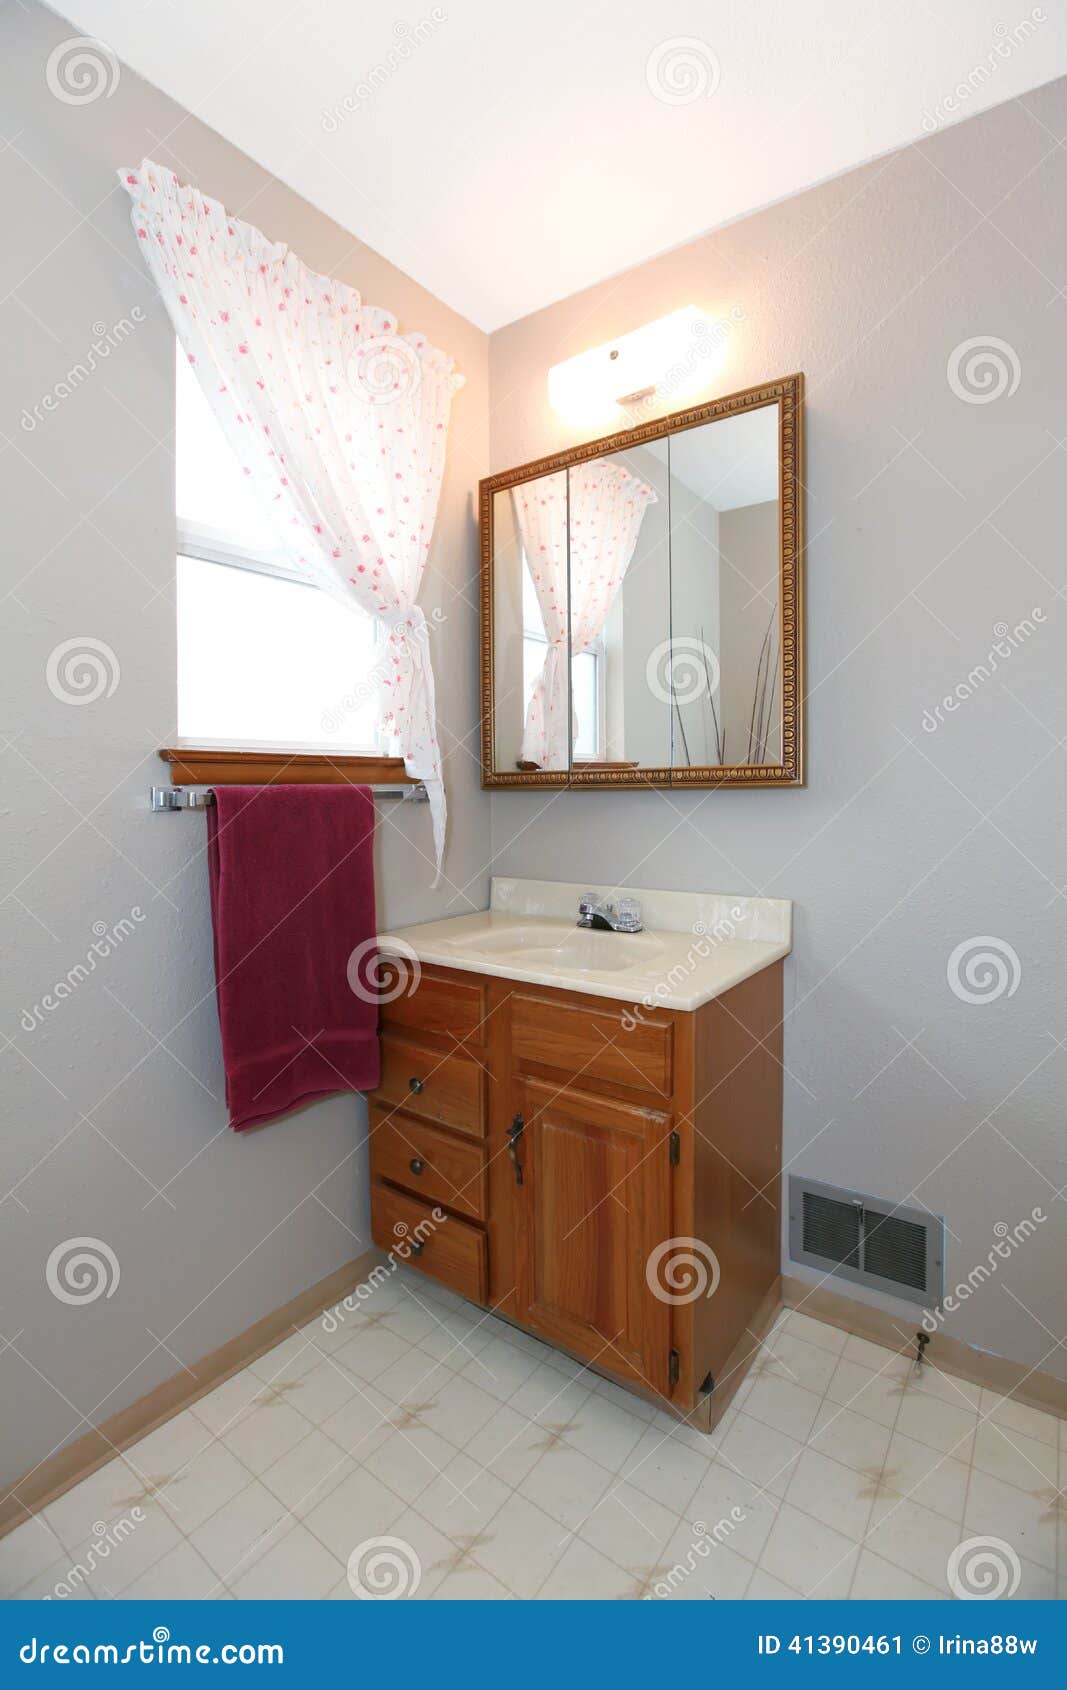 canto simples com vaidade do banheiro, espelho do banheiro, janela 